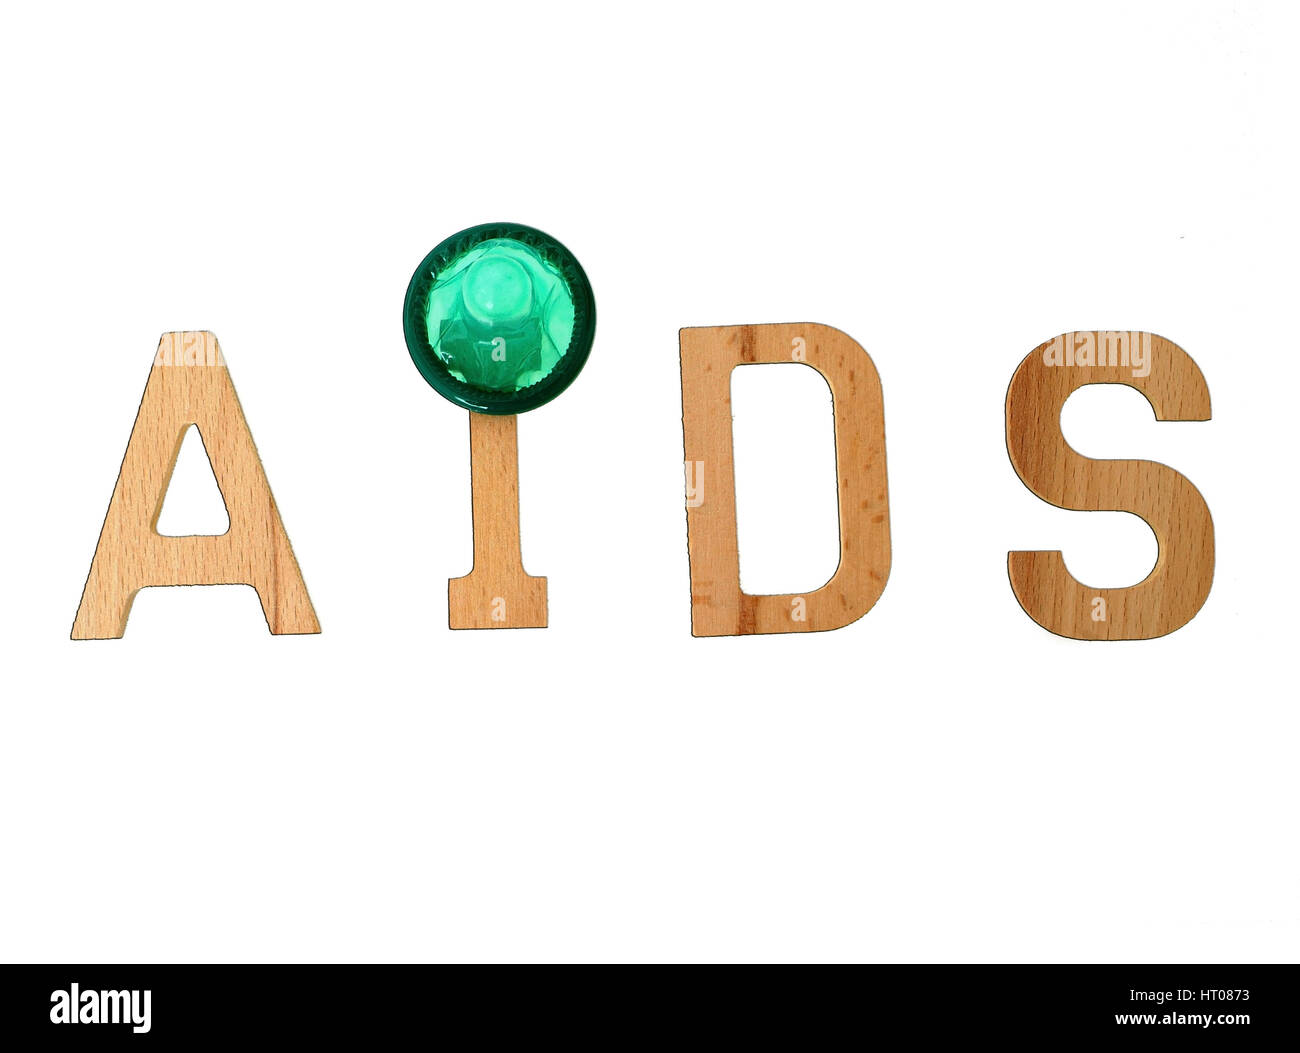 Symbolbild Aids, Safer-Sex - simbolico per l'aids, il sesso più sicuro Foto Stock